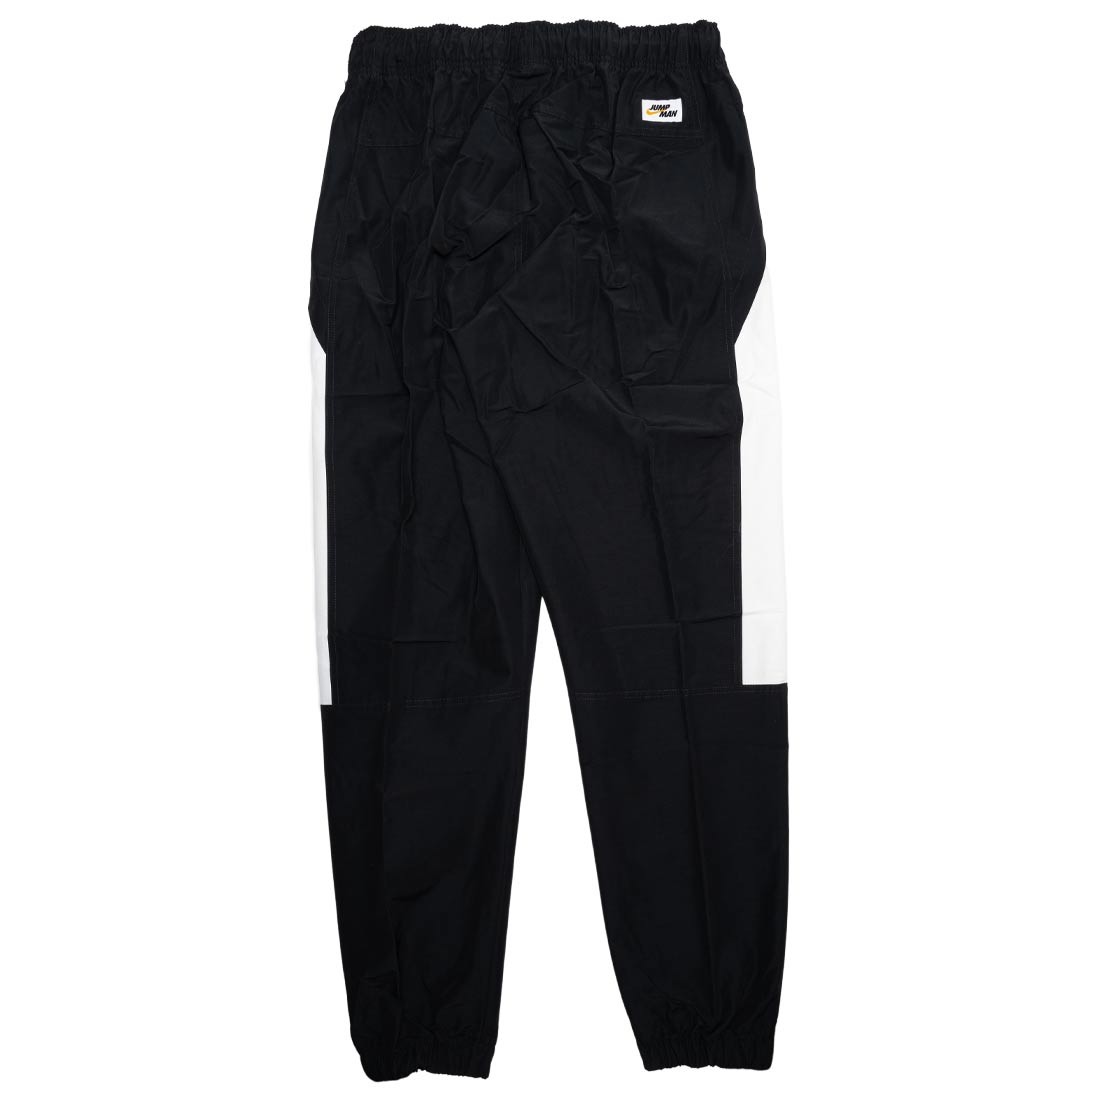 Jordan Men Jumpman Woven pants (black / white / black)